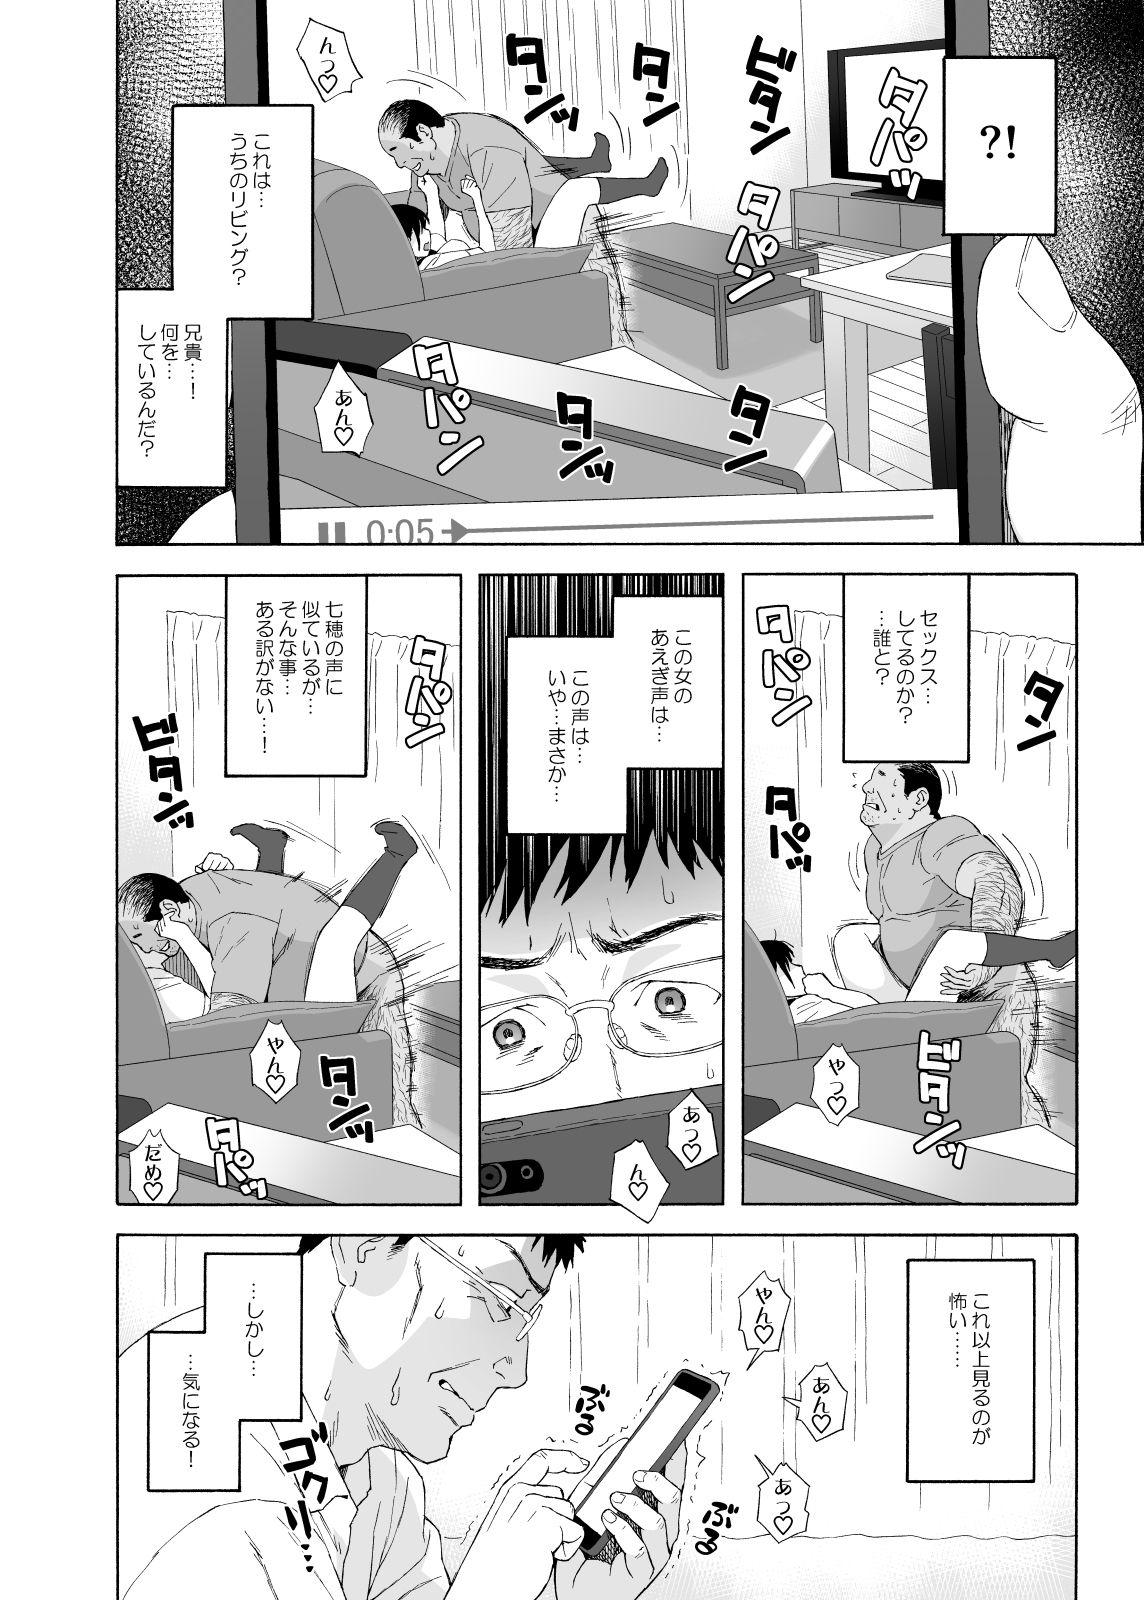 Gayfuck Otouto no Musume 4 - Original Nasty - Page 6